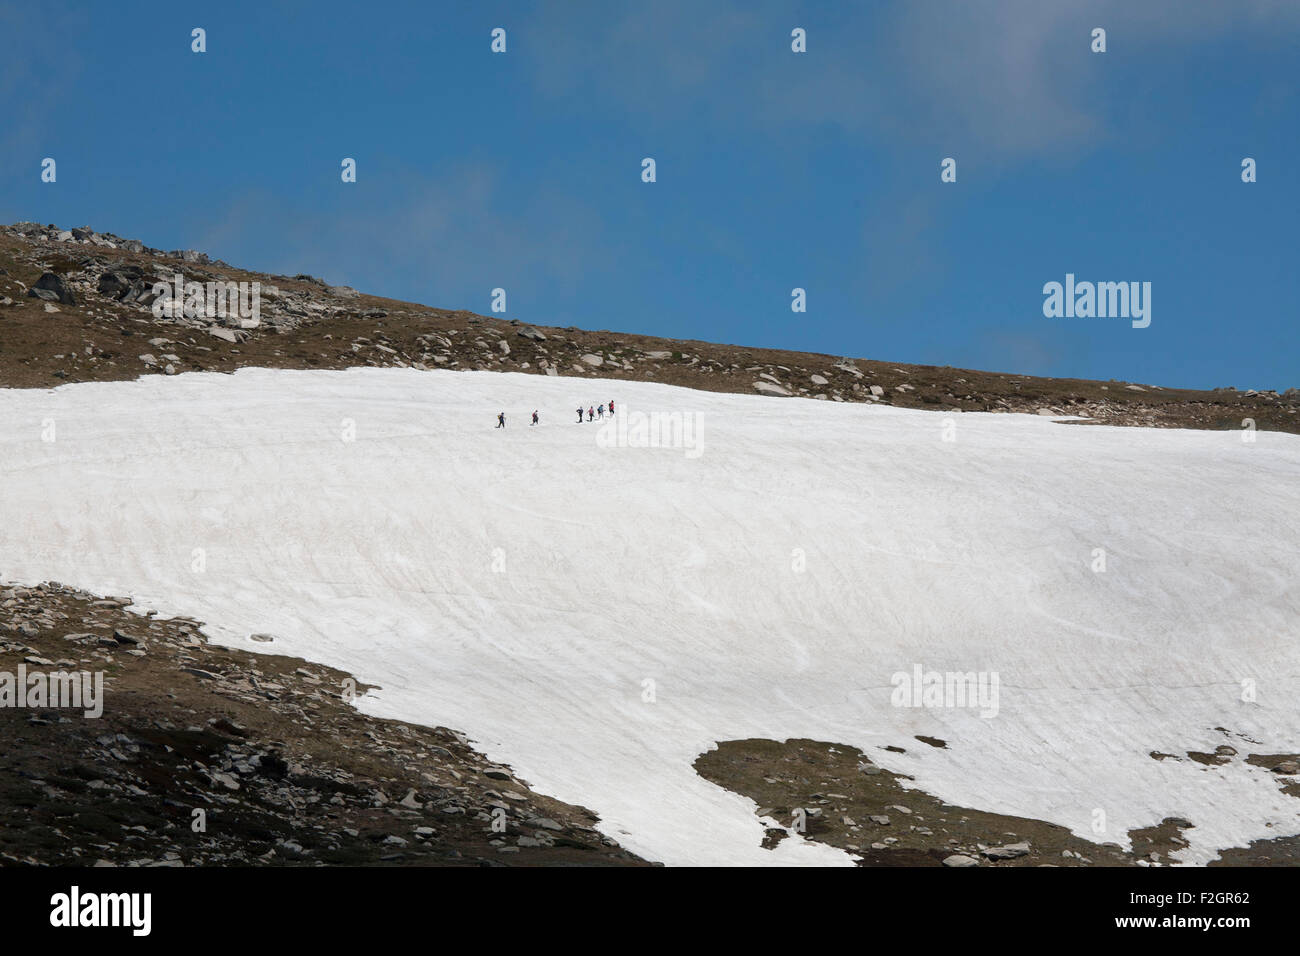 Gruppe von Wanderern auf den Spuren durch den Schnee auf den Gipfel des Mount Kosciusko New South Wales Australien Stockfoto